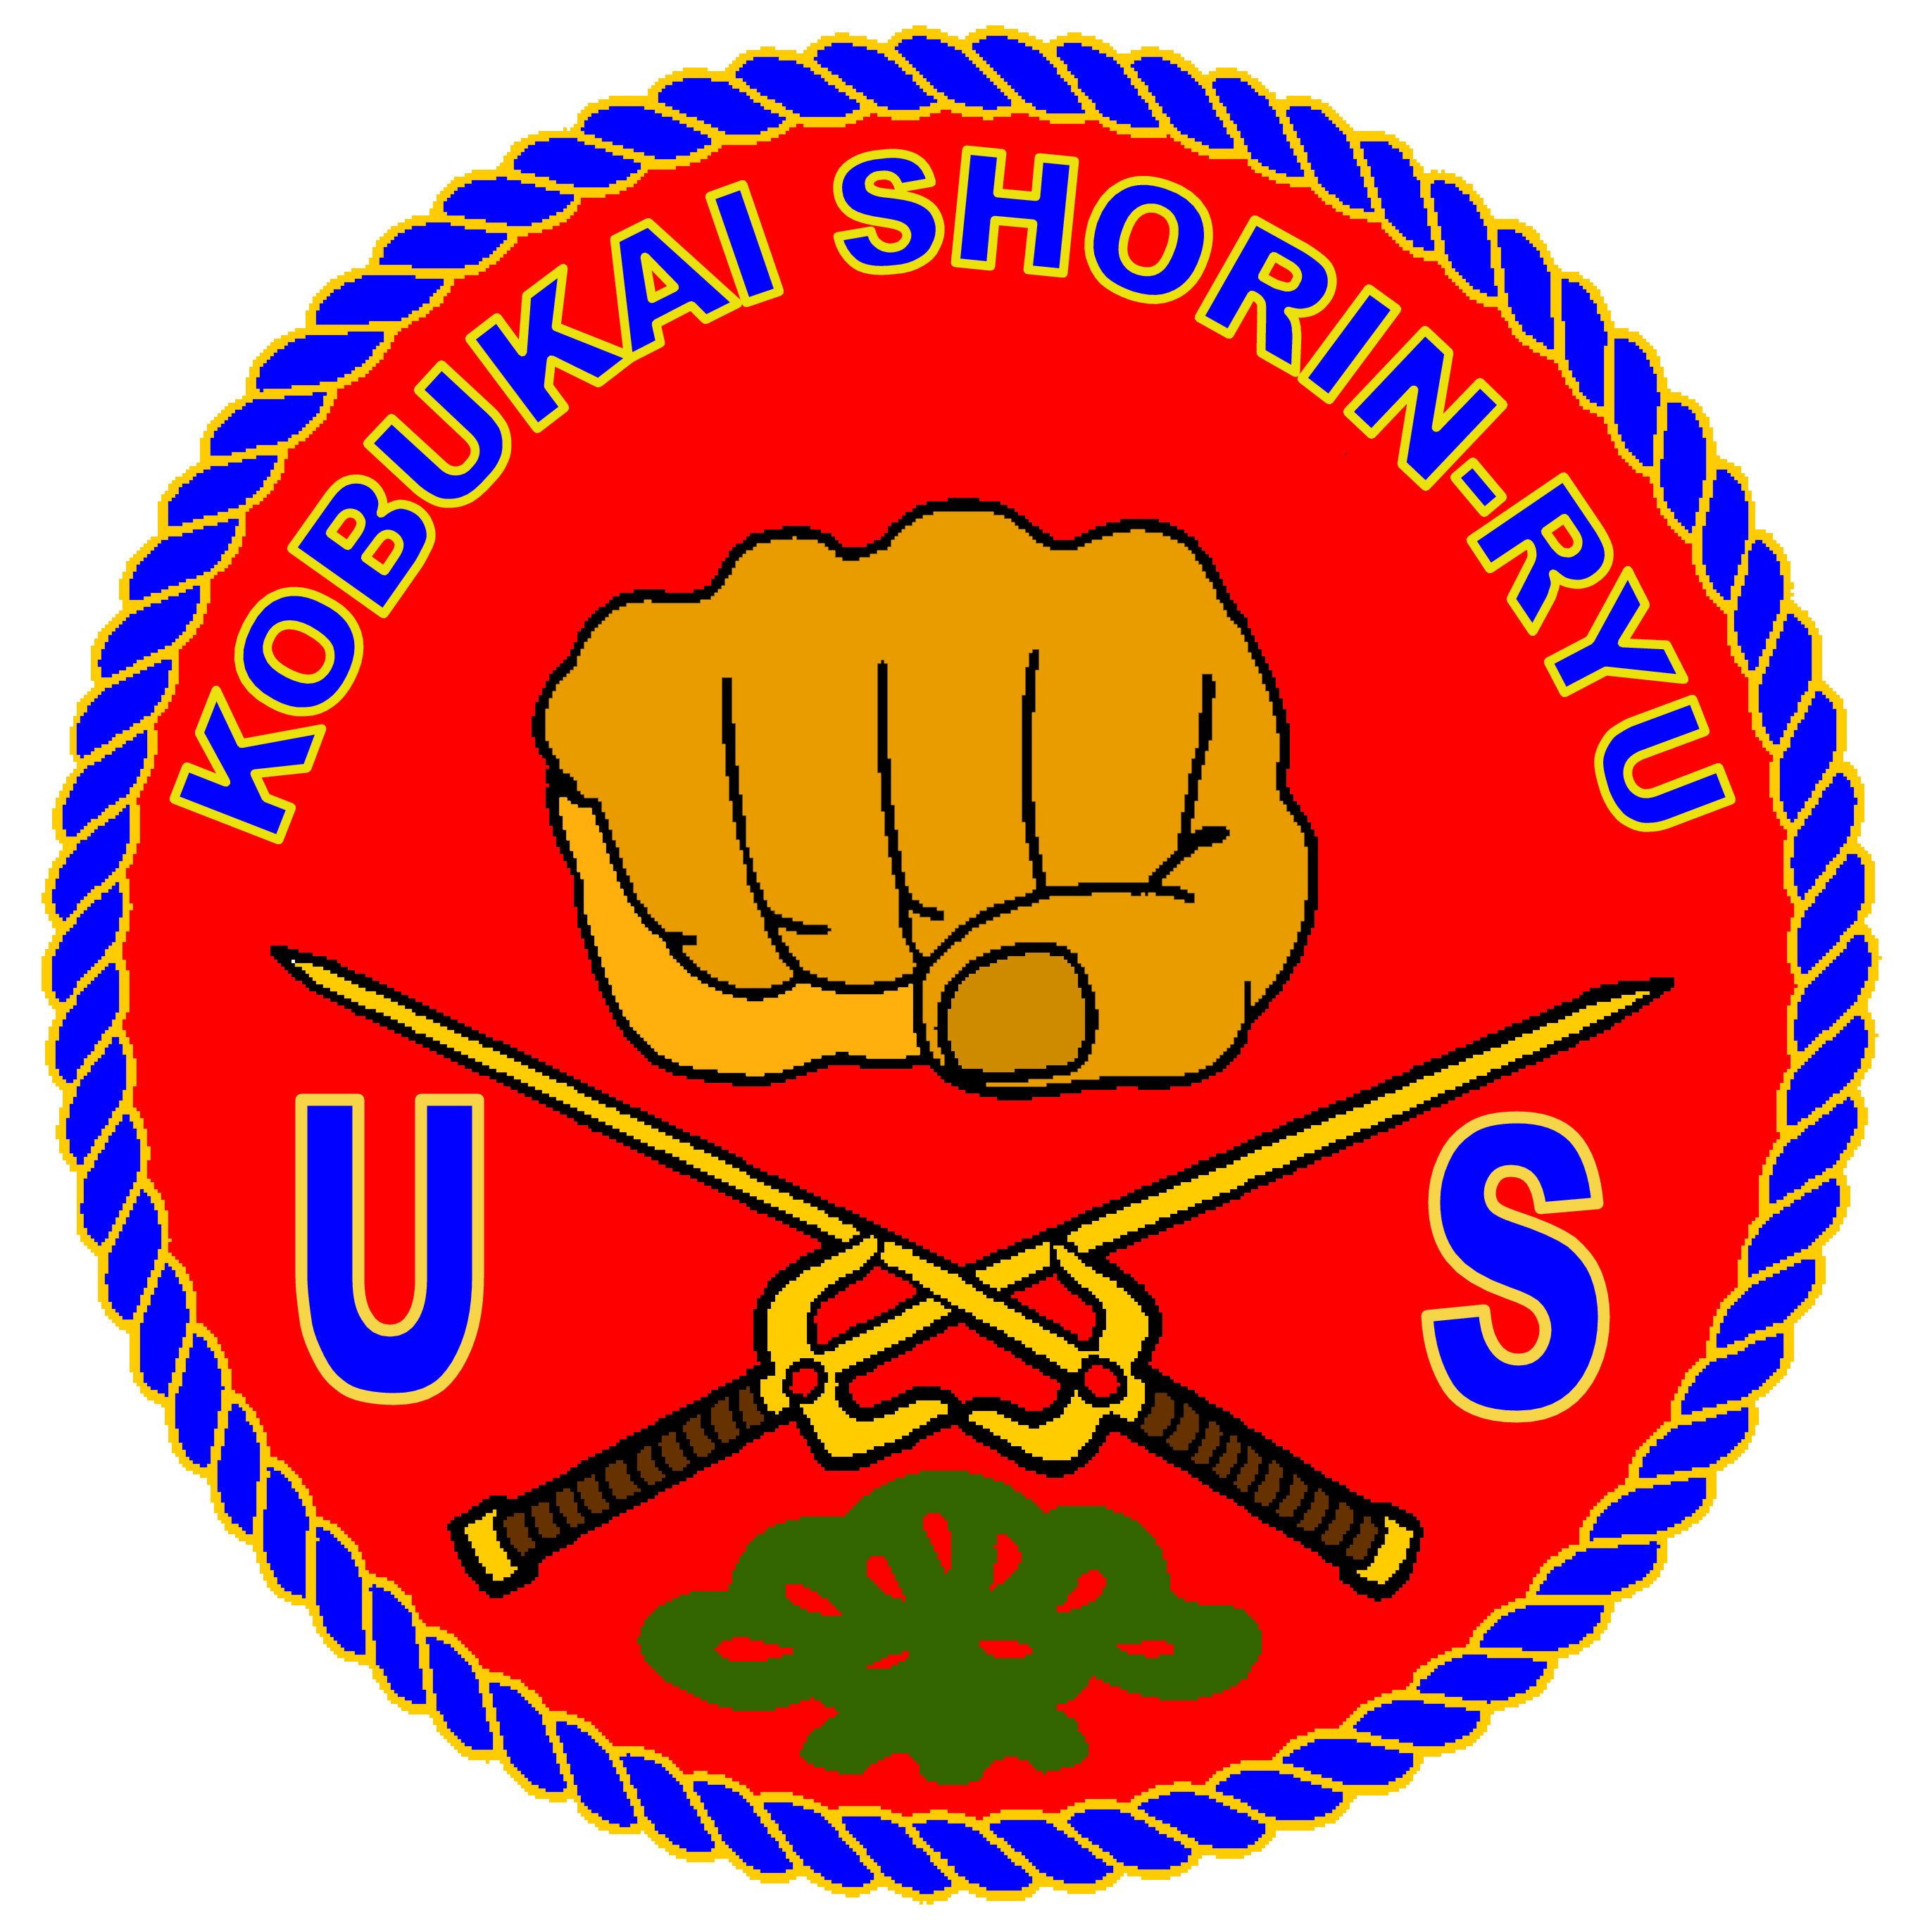 United States Kobukai Shorin-ryu Karate